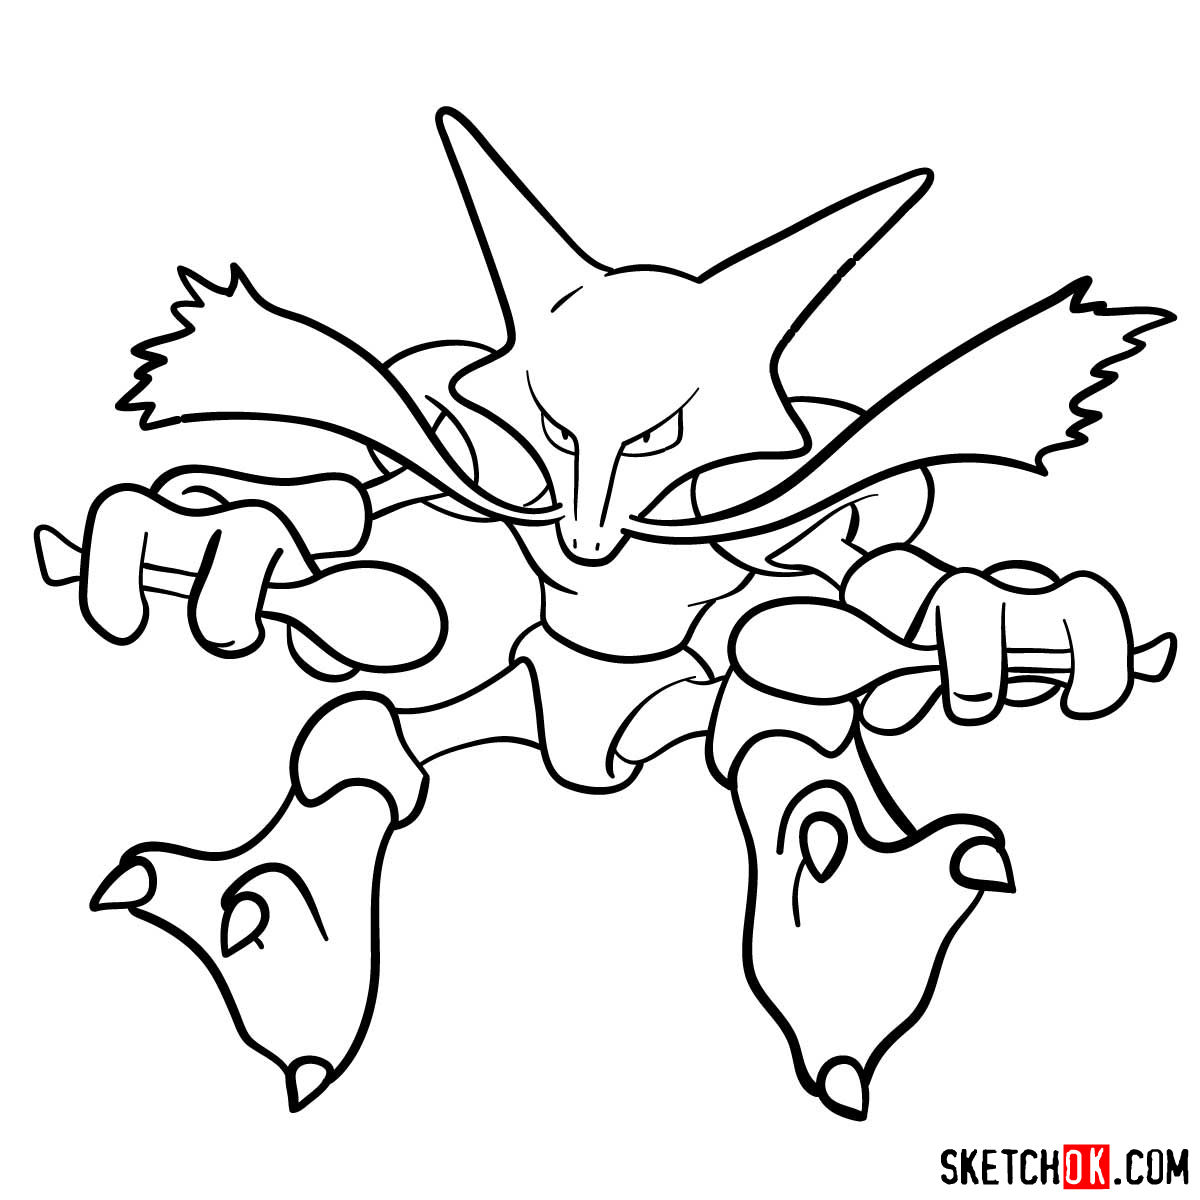 How to draw Alakazam | Pokemon - step 11